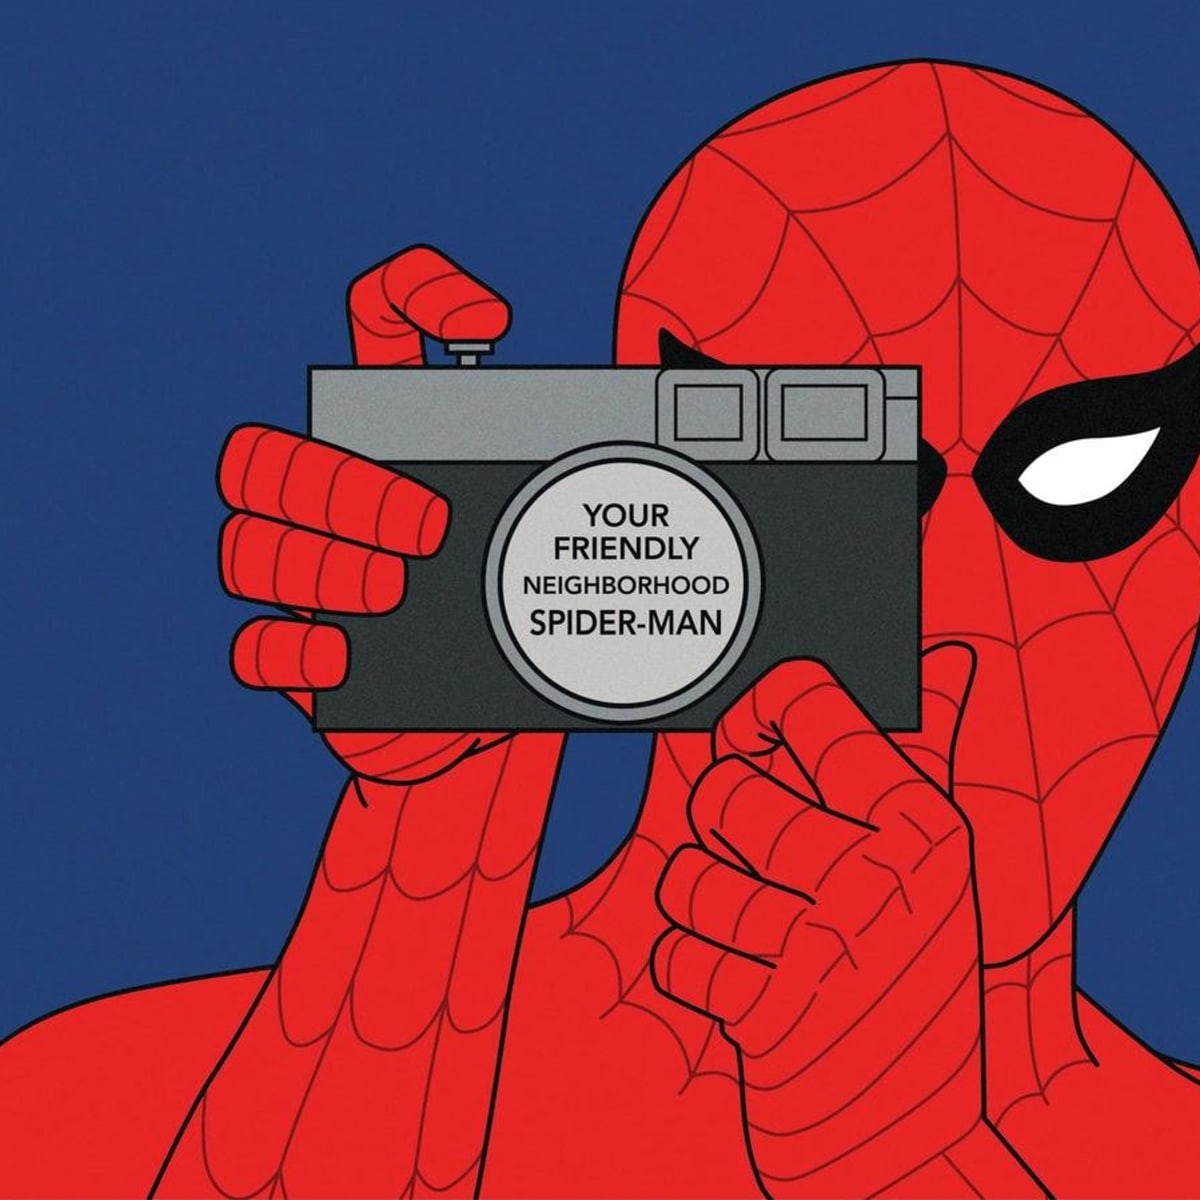 Spider man meme là gì? Trọn bộ ảnh meme người nhện cực hài